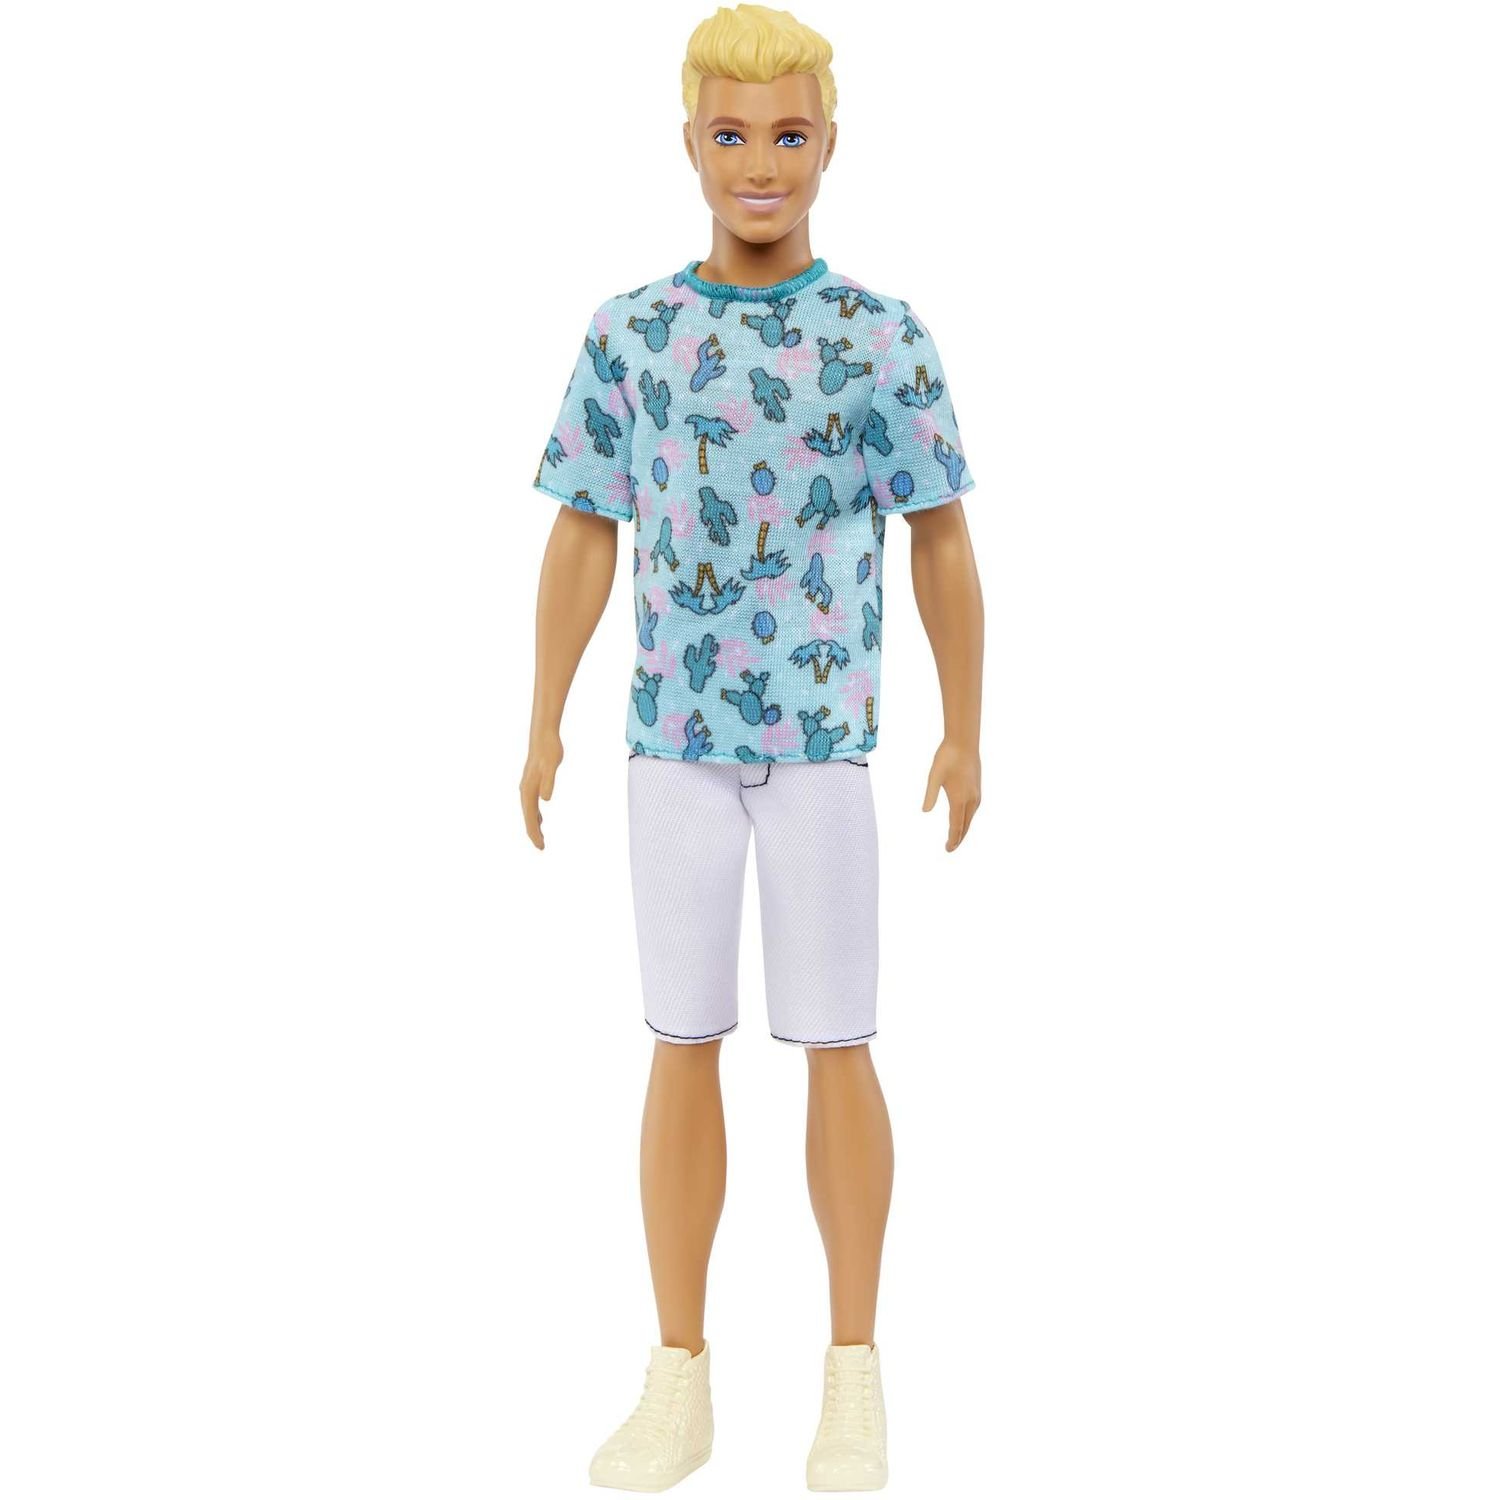 Лялька Barbie Кен Модник у футболці з кактусами, 31,5 см (HJT10) - фото 1